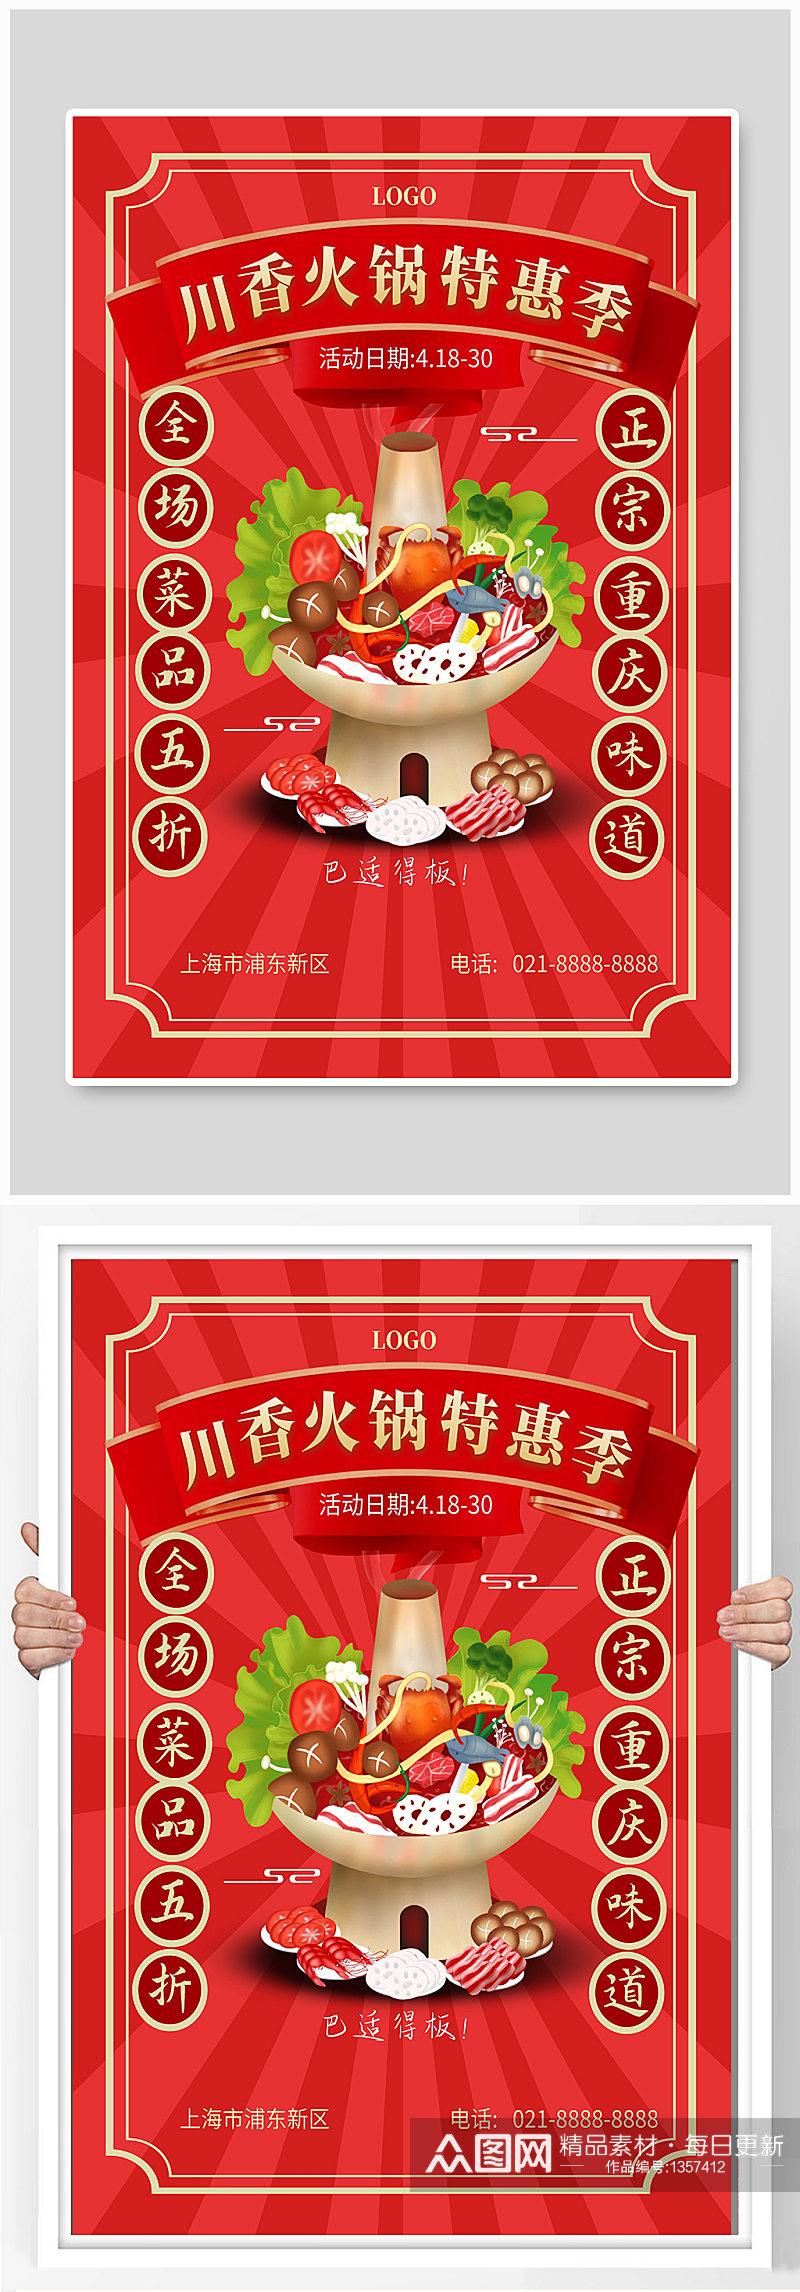 火锅店宣传海报设计素材